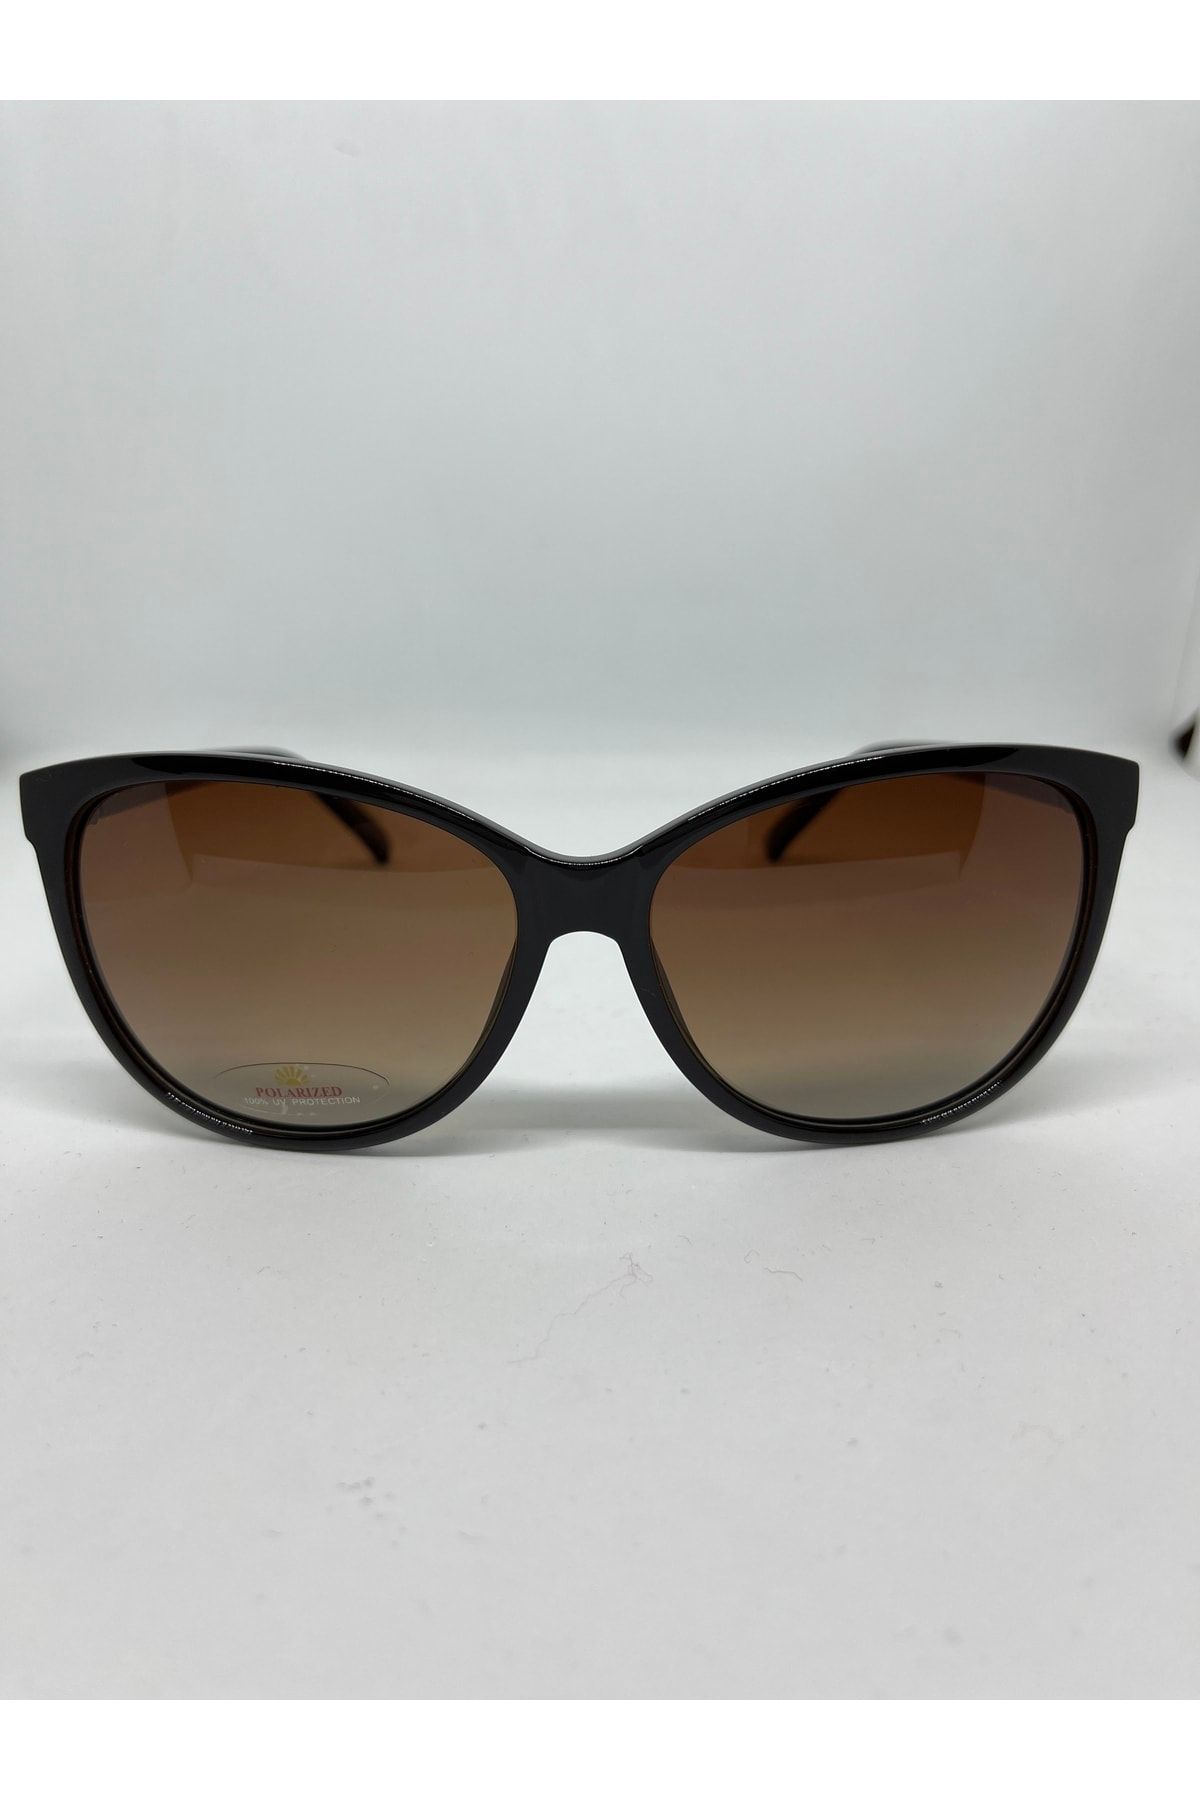 Benx Sunglasses Benx 9261 Güneş Gözlüğü